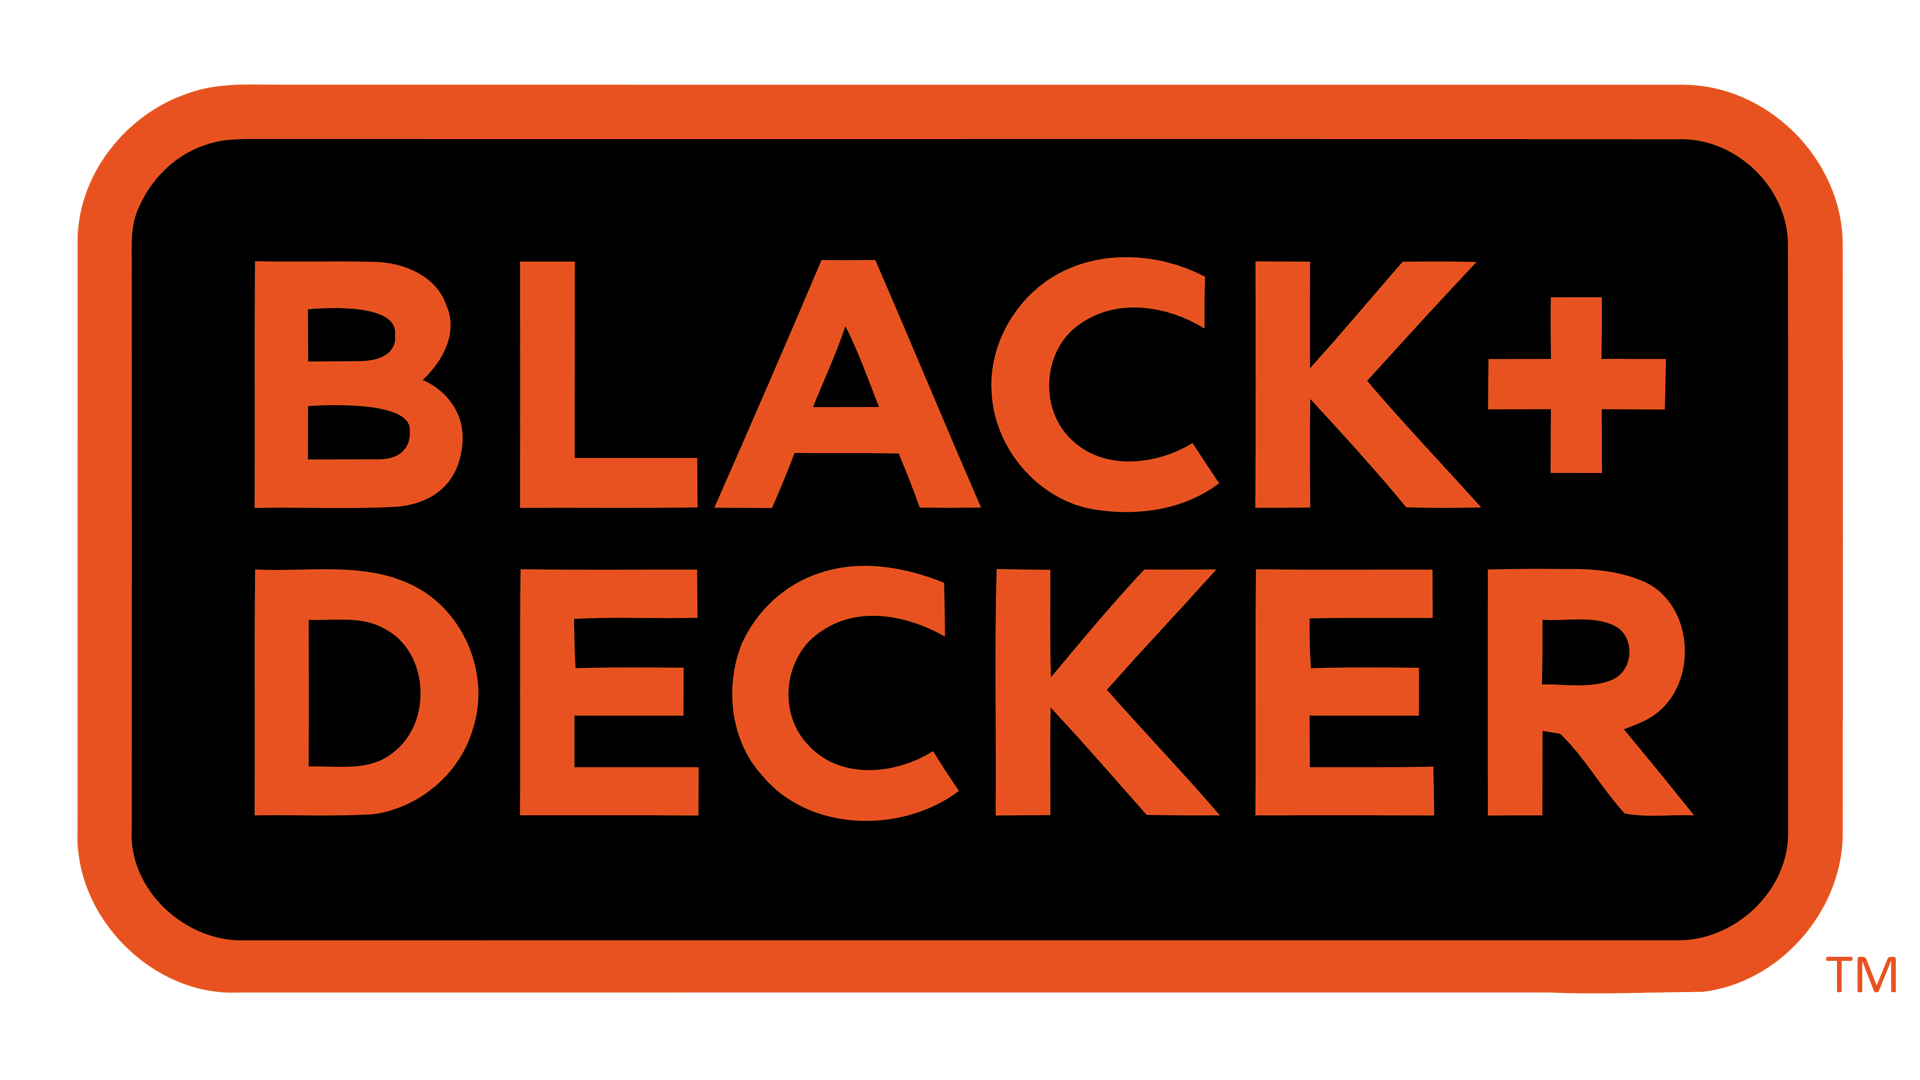 BLACK & DECKER in 